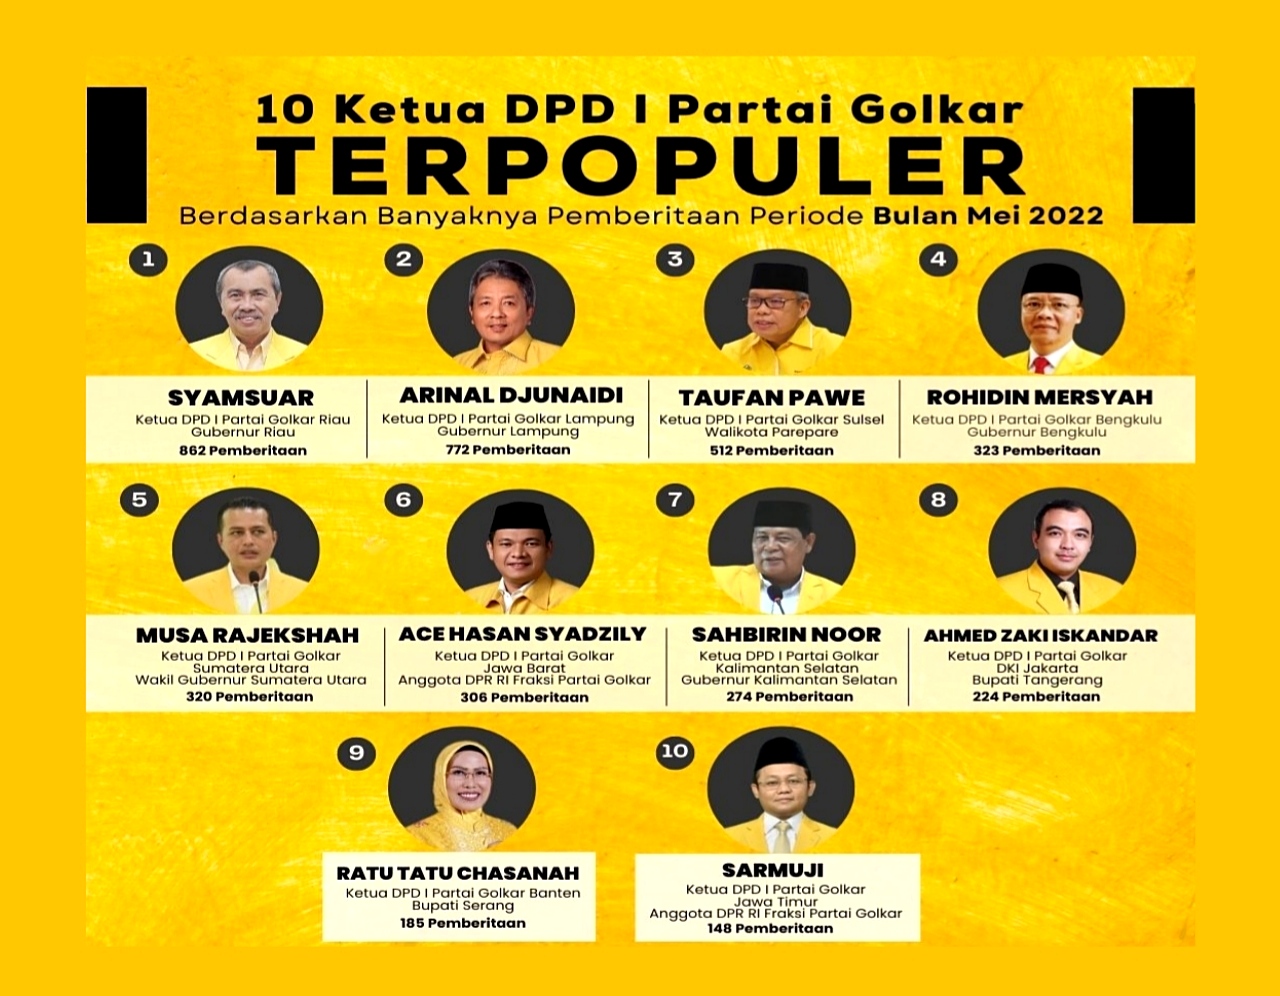 Arinal Djunaidi Masuk Daftar Ketua DPD I Partai Golkar Terpopuler 